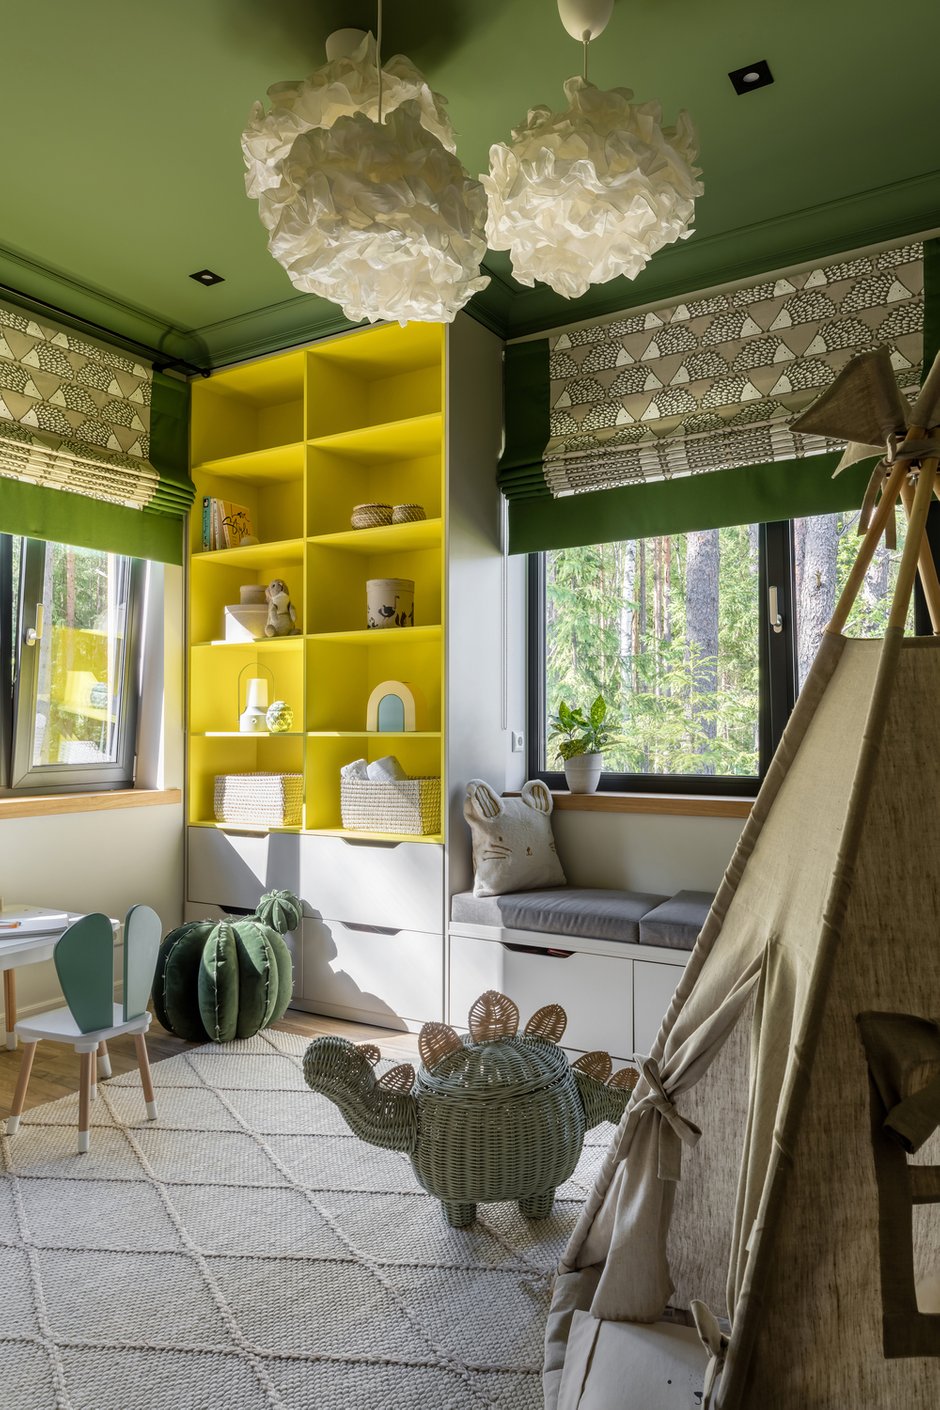 В детской комнате преобладает зеленый цвет, им выкрасили стены и потолок. Этот прием здорово смотрится в сочетании с пейзажем за окном.